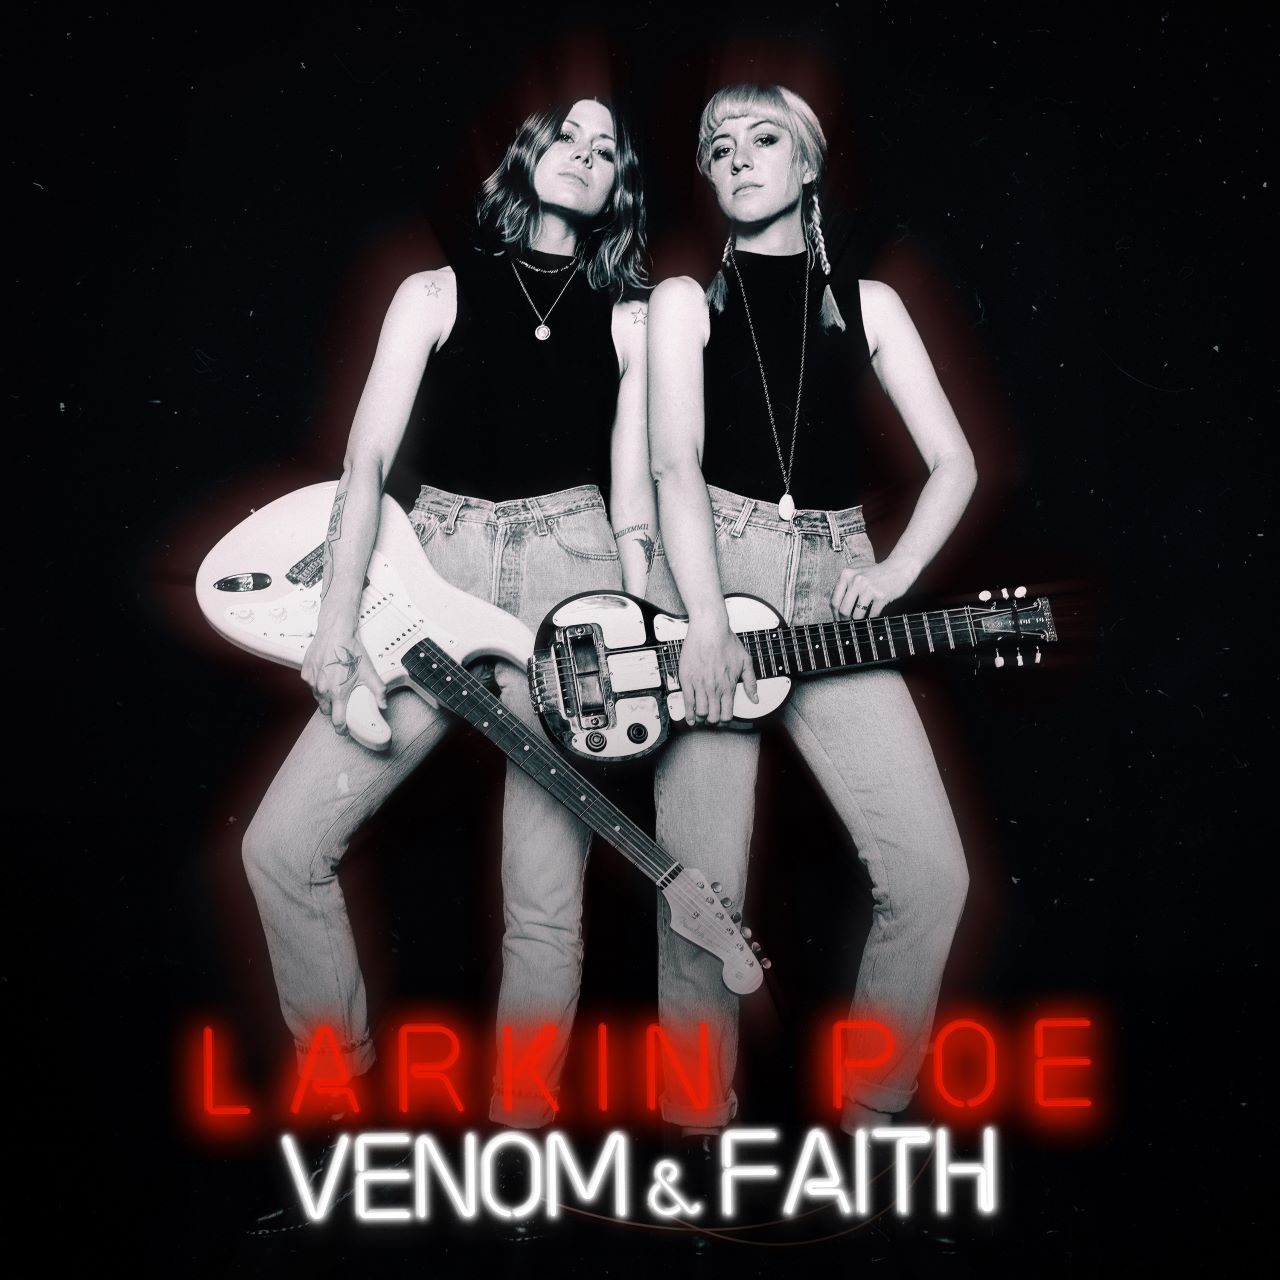 Larkin Poe - Venom & Faith cover album